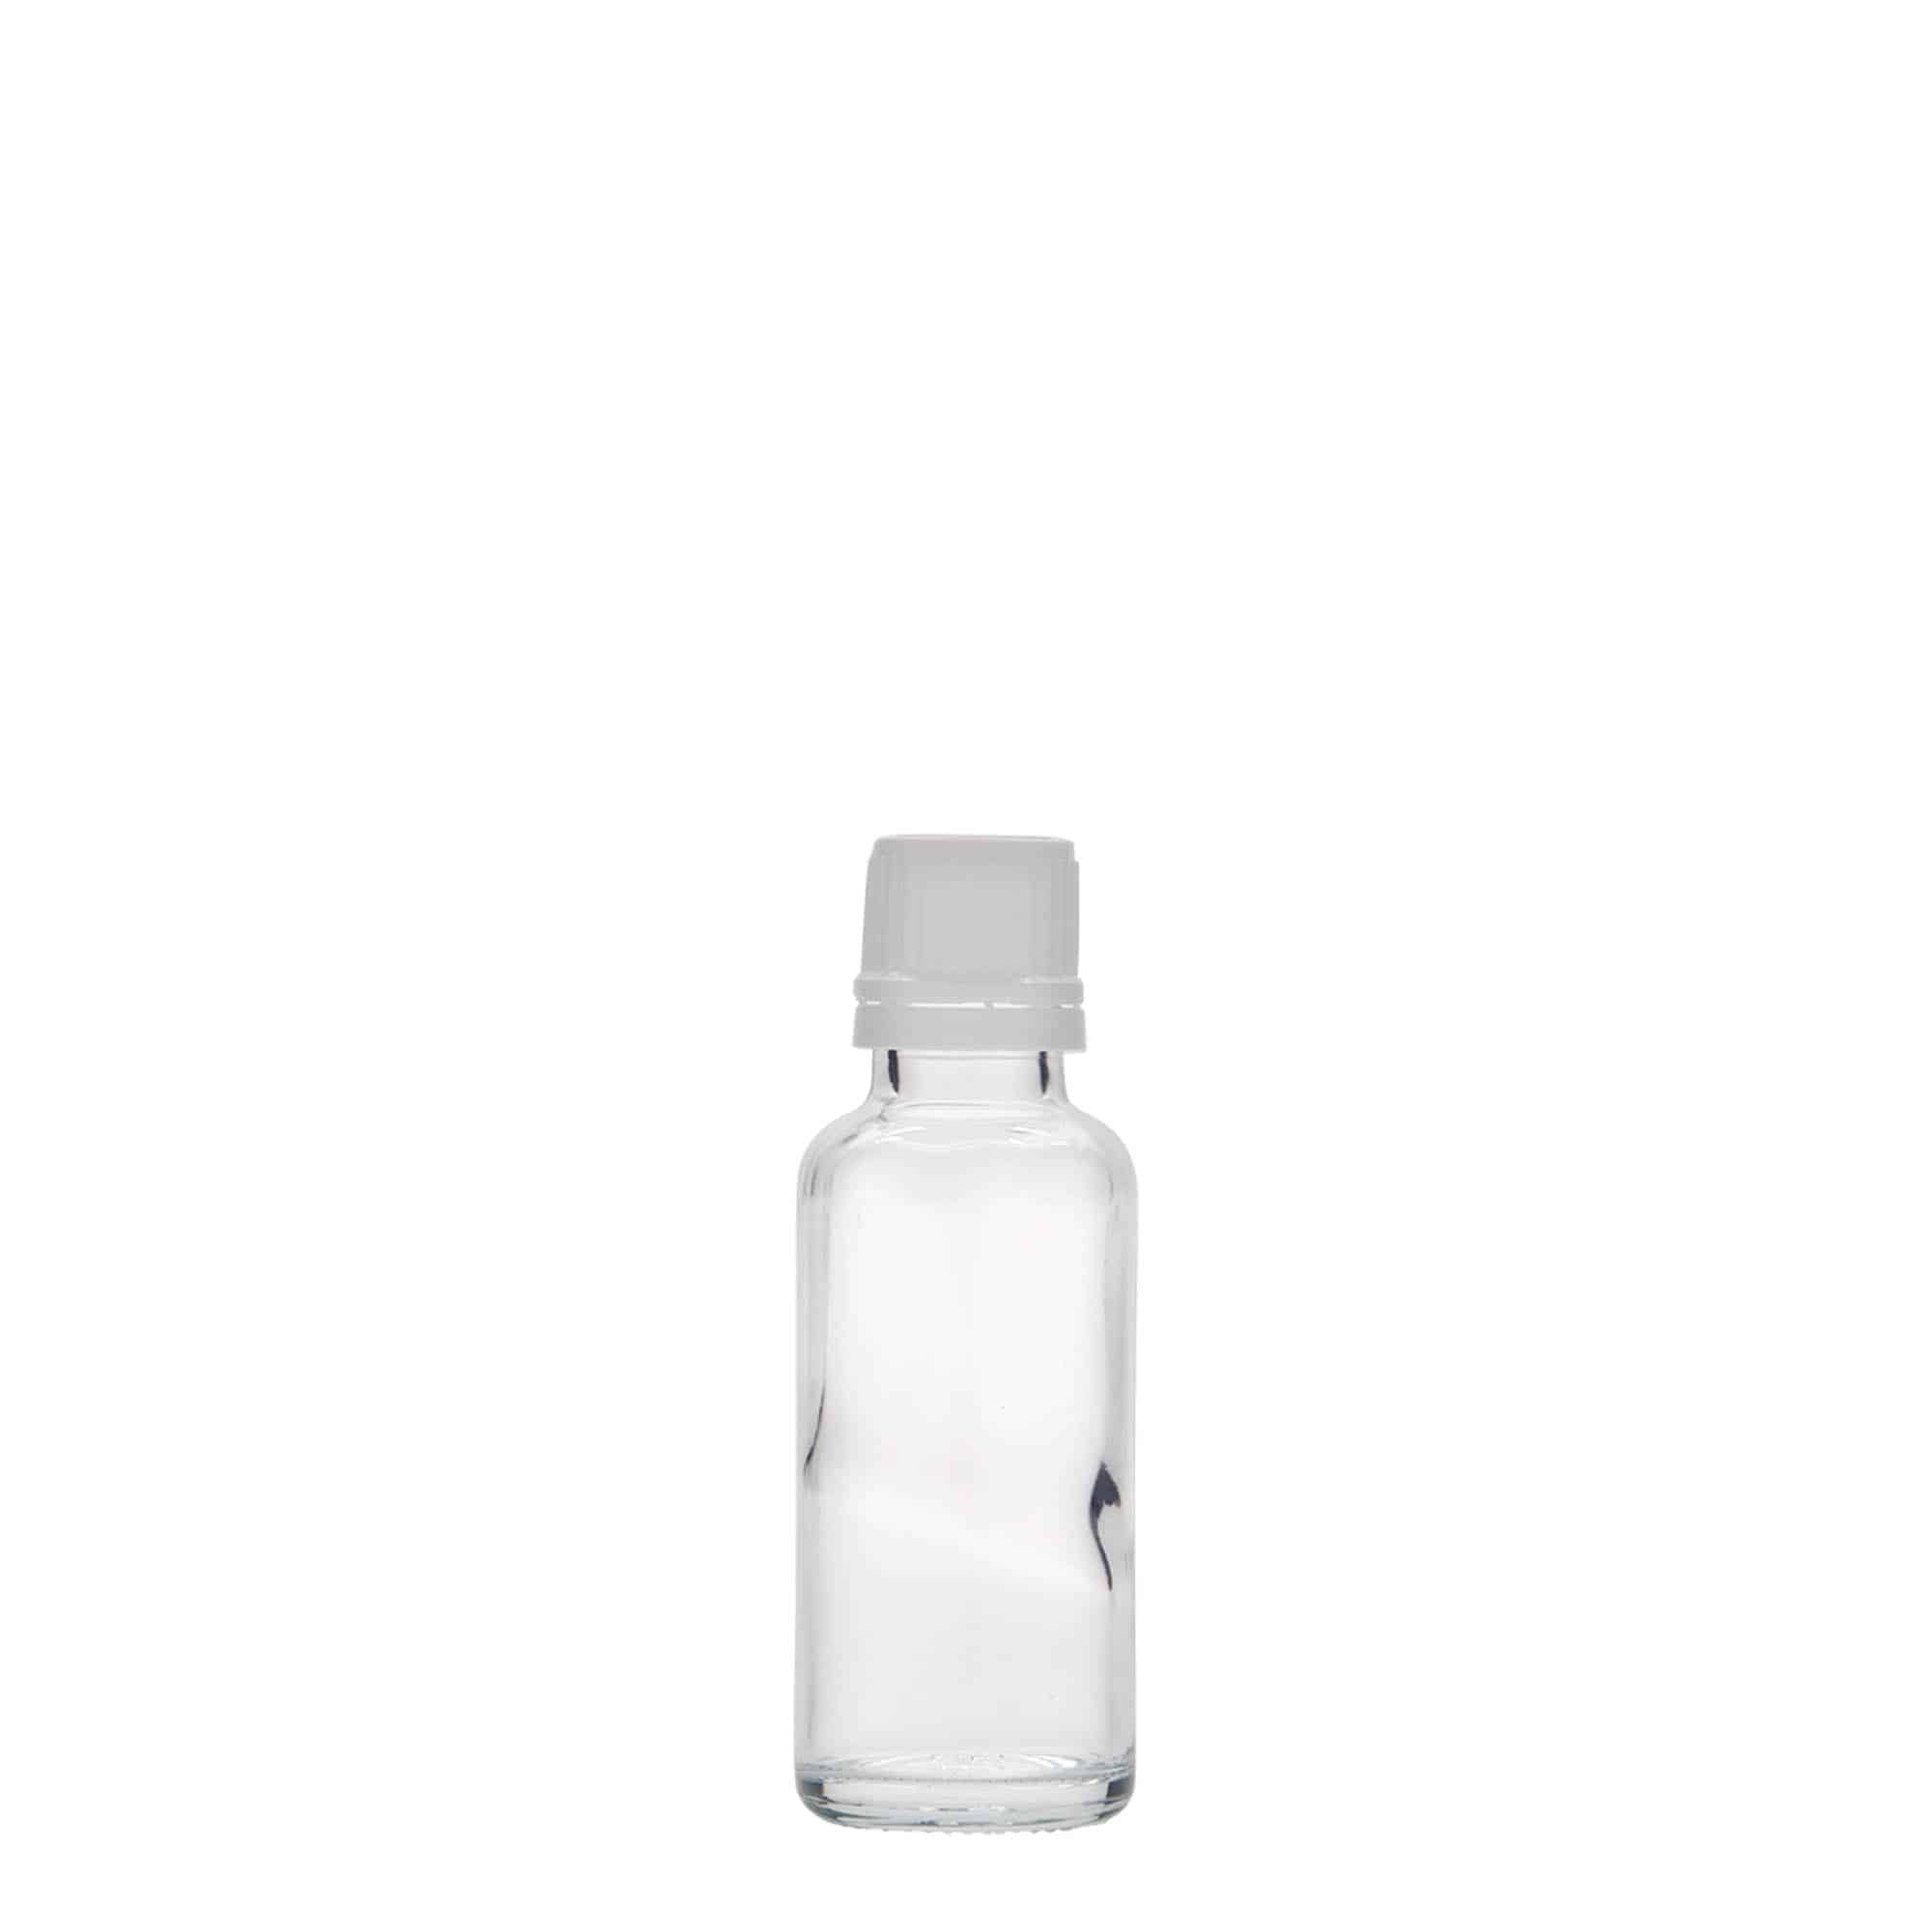 30 ml Flacone farmaceutico, vetro, imboccatura: DIN 18